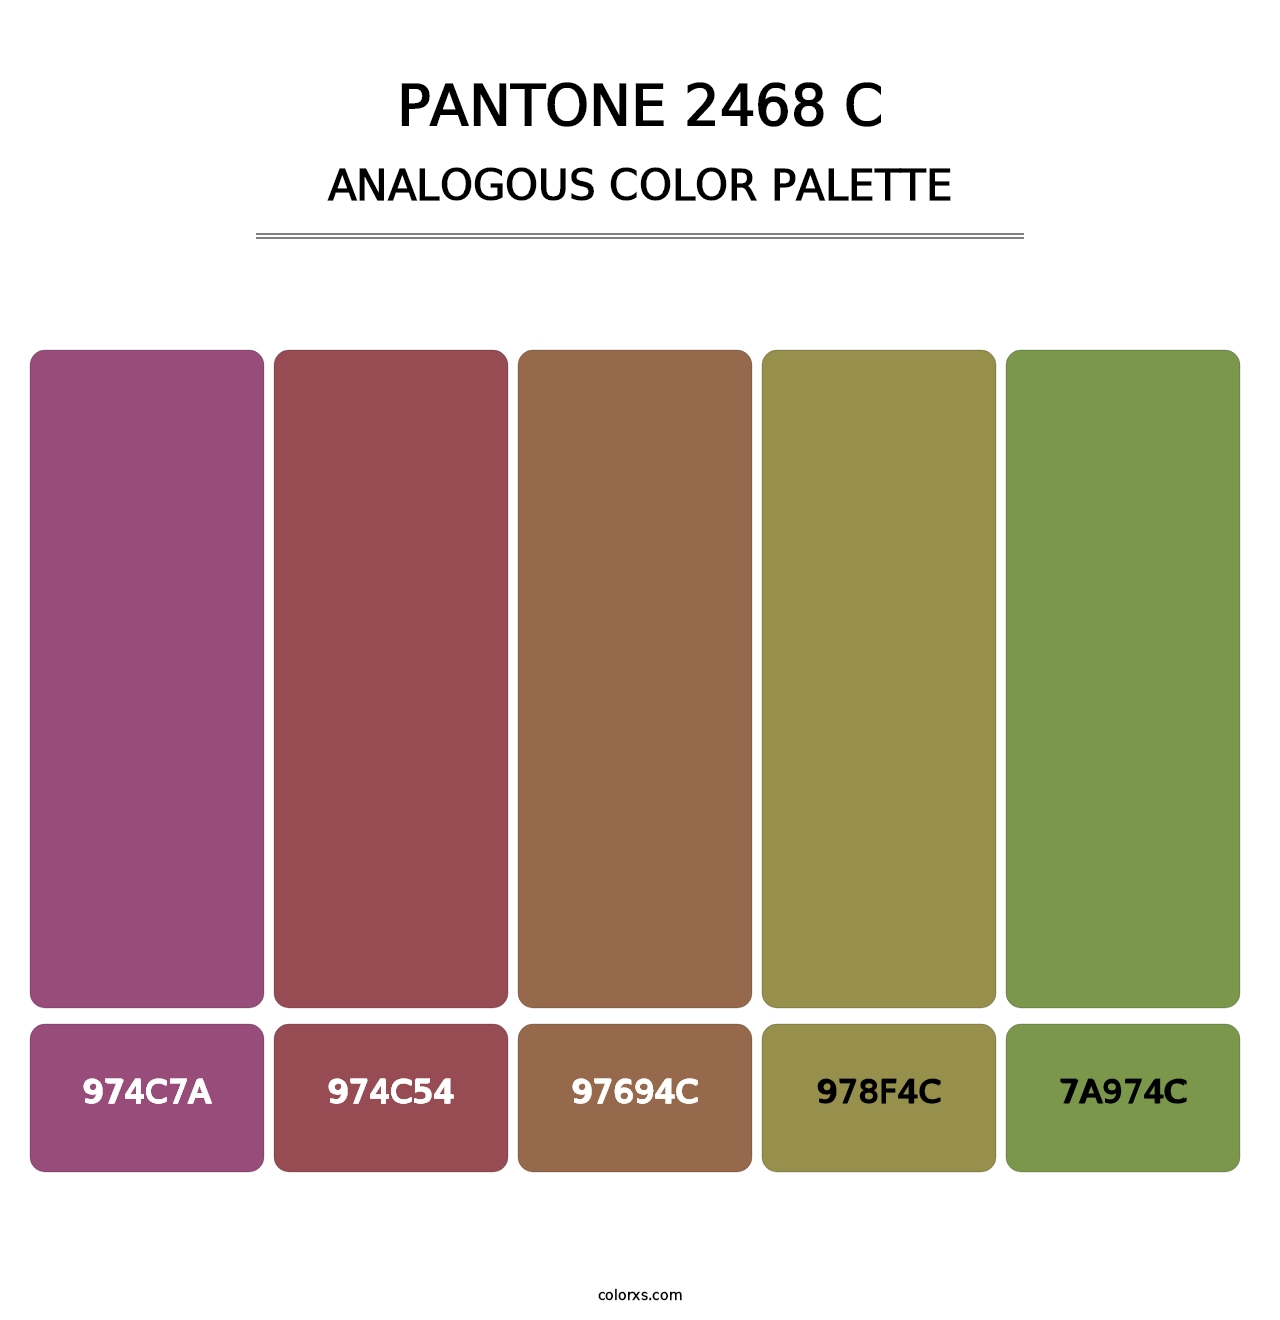 PANTONE 2468 C - Analogous Color Palette